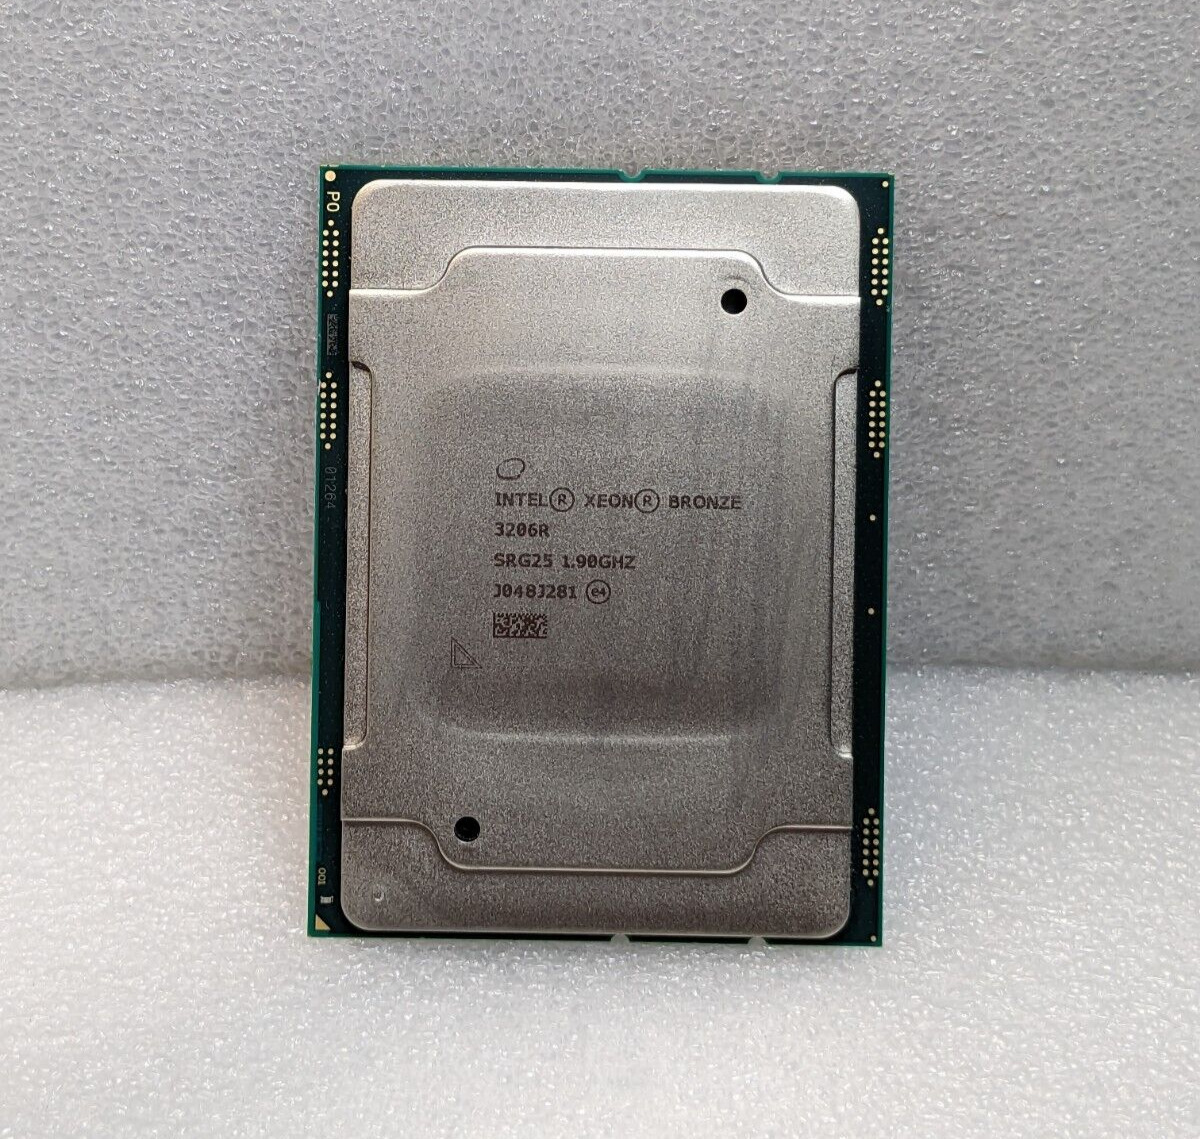 Intel Xeon Bronze 3206R Processor CPU┃SRG25┃1.9GHz┃8-Core┃Socket 3647┃11MB L3┃